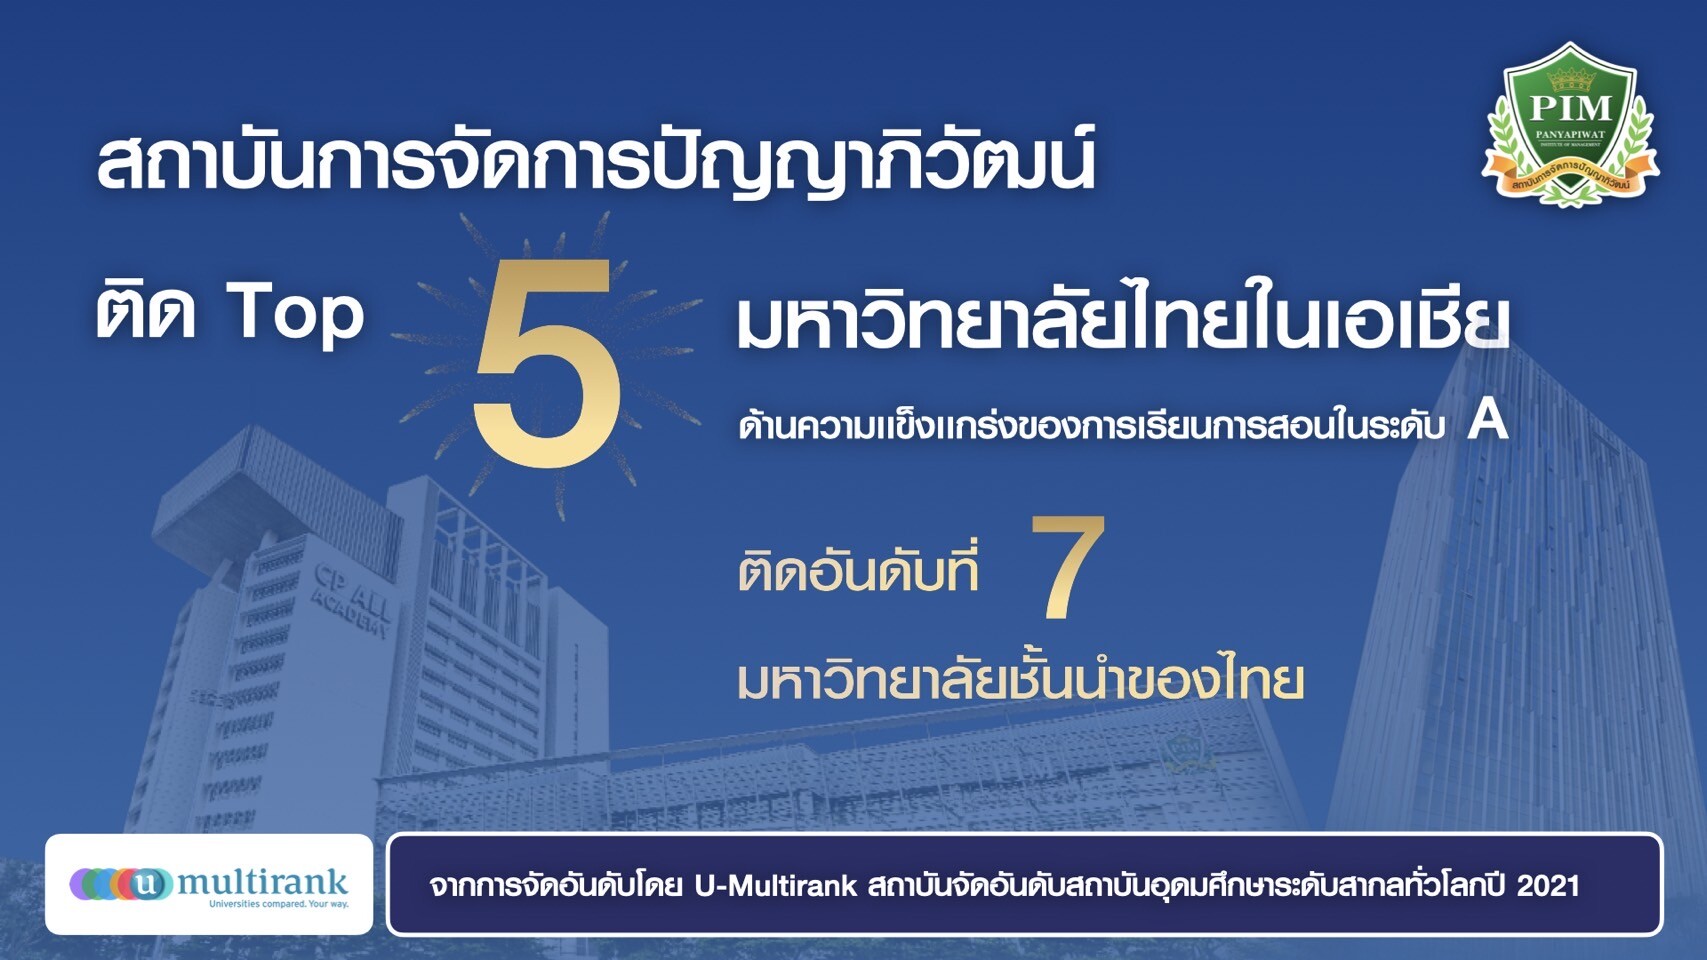 สถาบันการจัดการปัญญาภิวัฒน์ (PIM) ติด Top 5 มหาวิทยาลัยไทยในเอเชีย ด้านความแข็งแกร่งของการเรียนการสอนในระดับ A และ ติดอันดับที่ 7 มหาวิทยาลัยชั้นนำไทย จากการจัดอันดับโดย U-Multirank